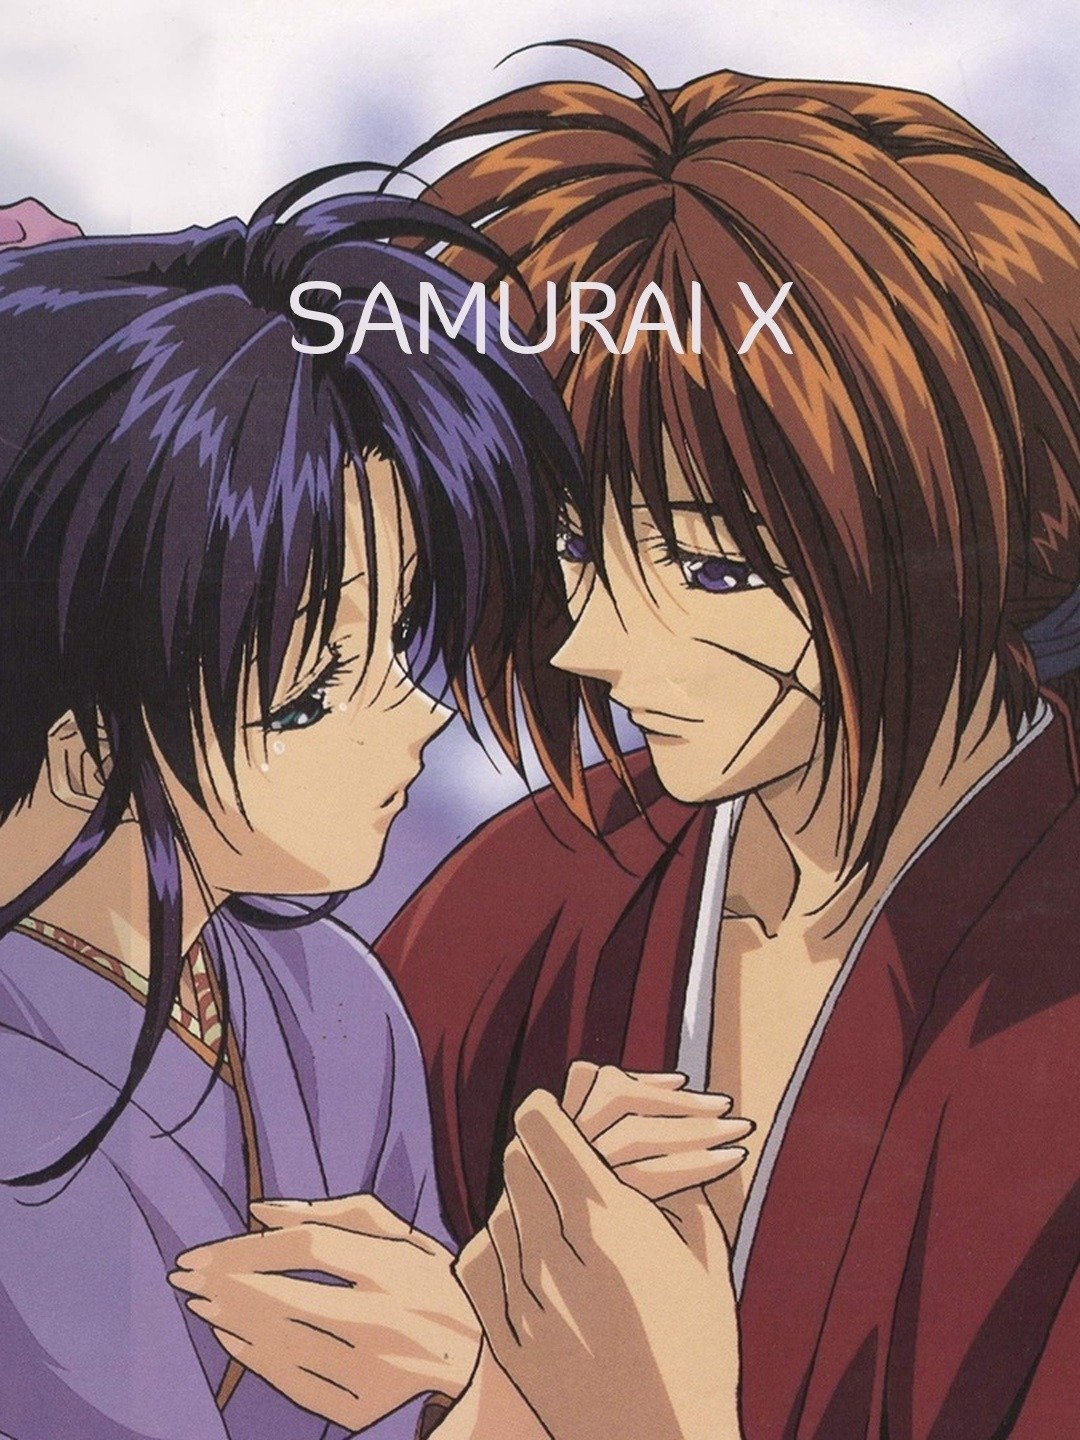 Rurouni Kenshin (TV 1996) - Anime News Network